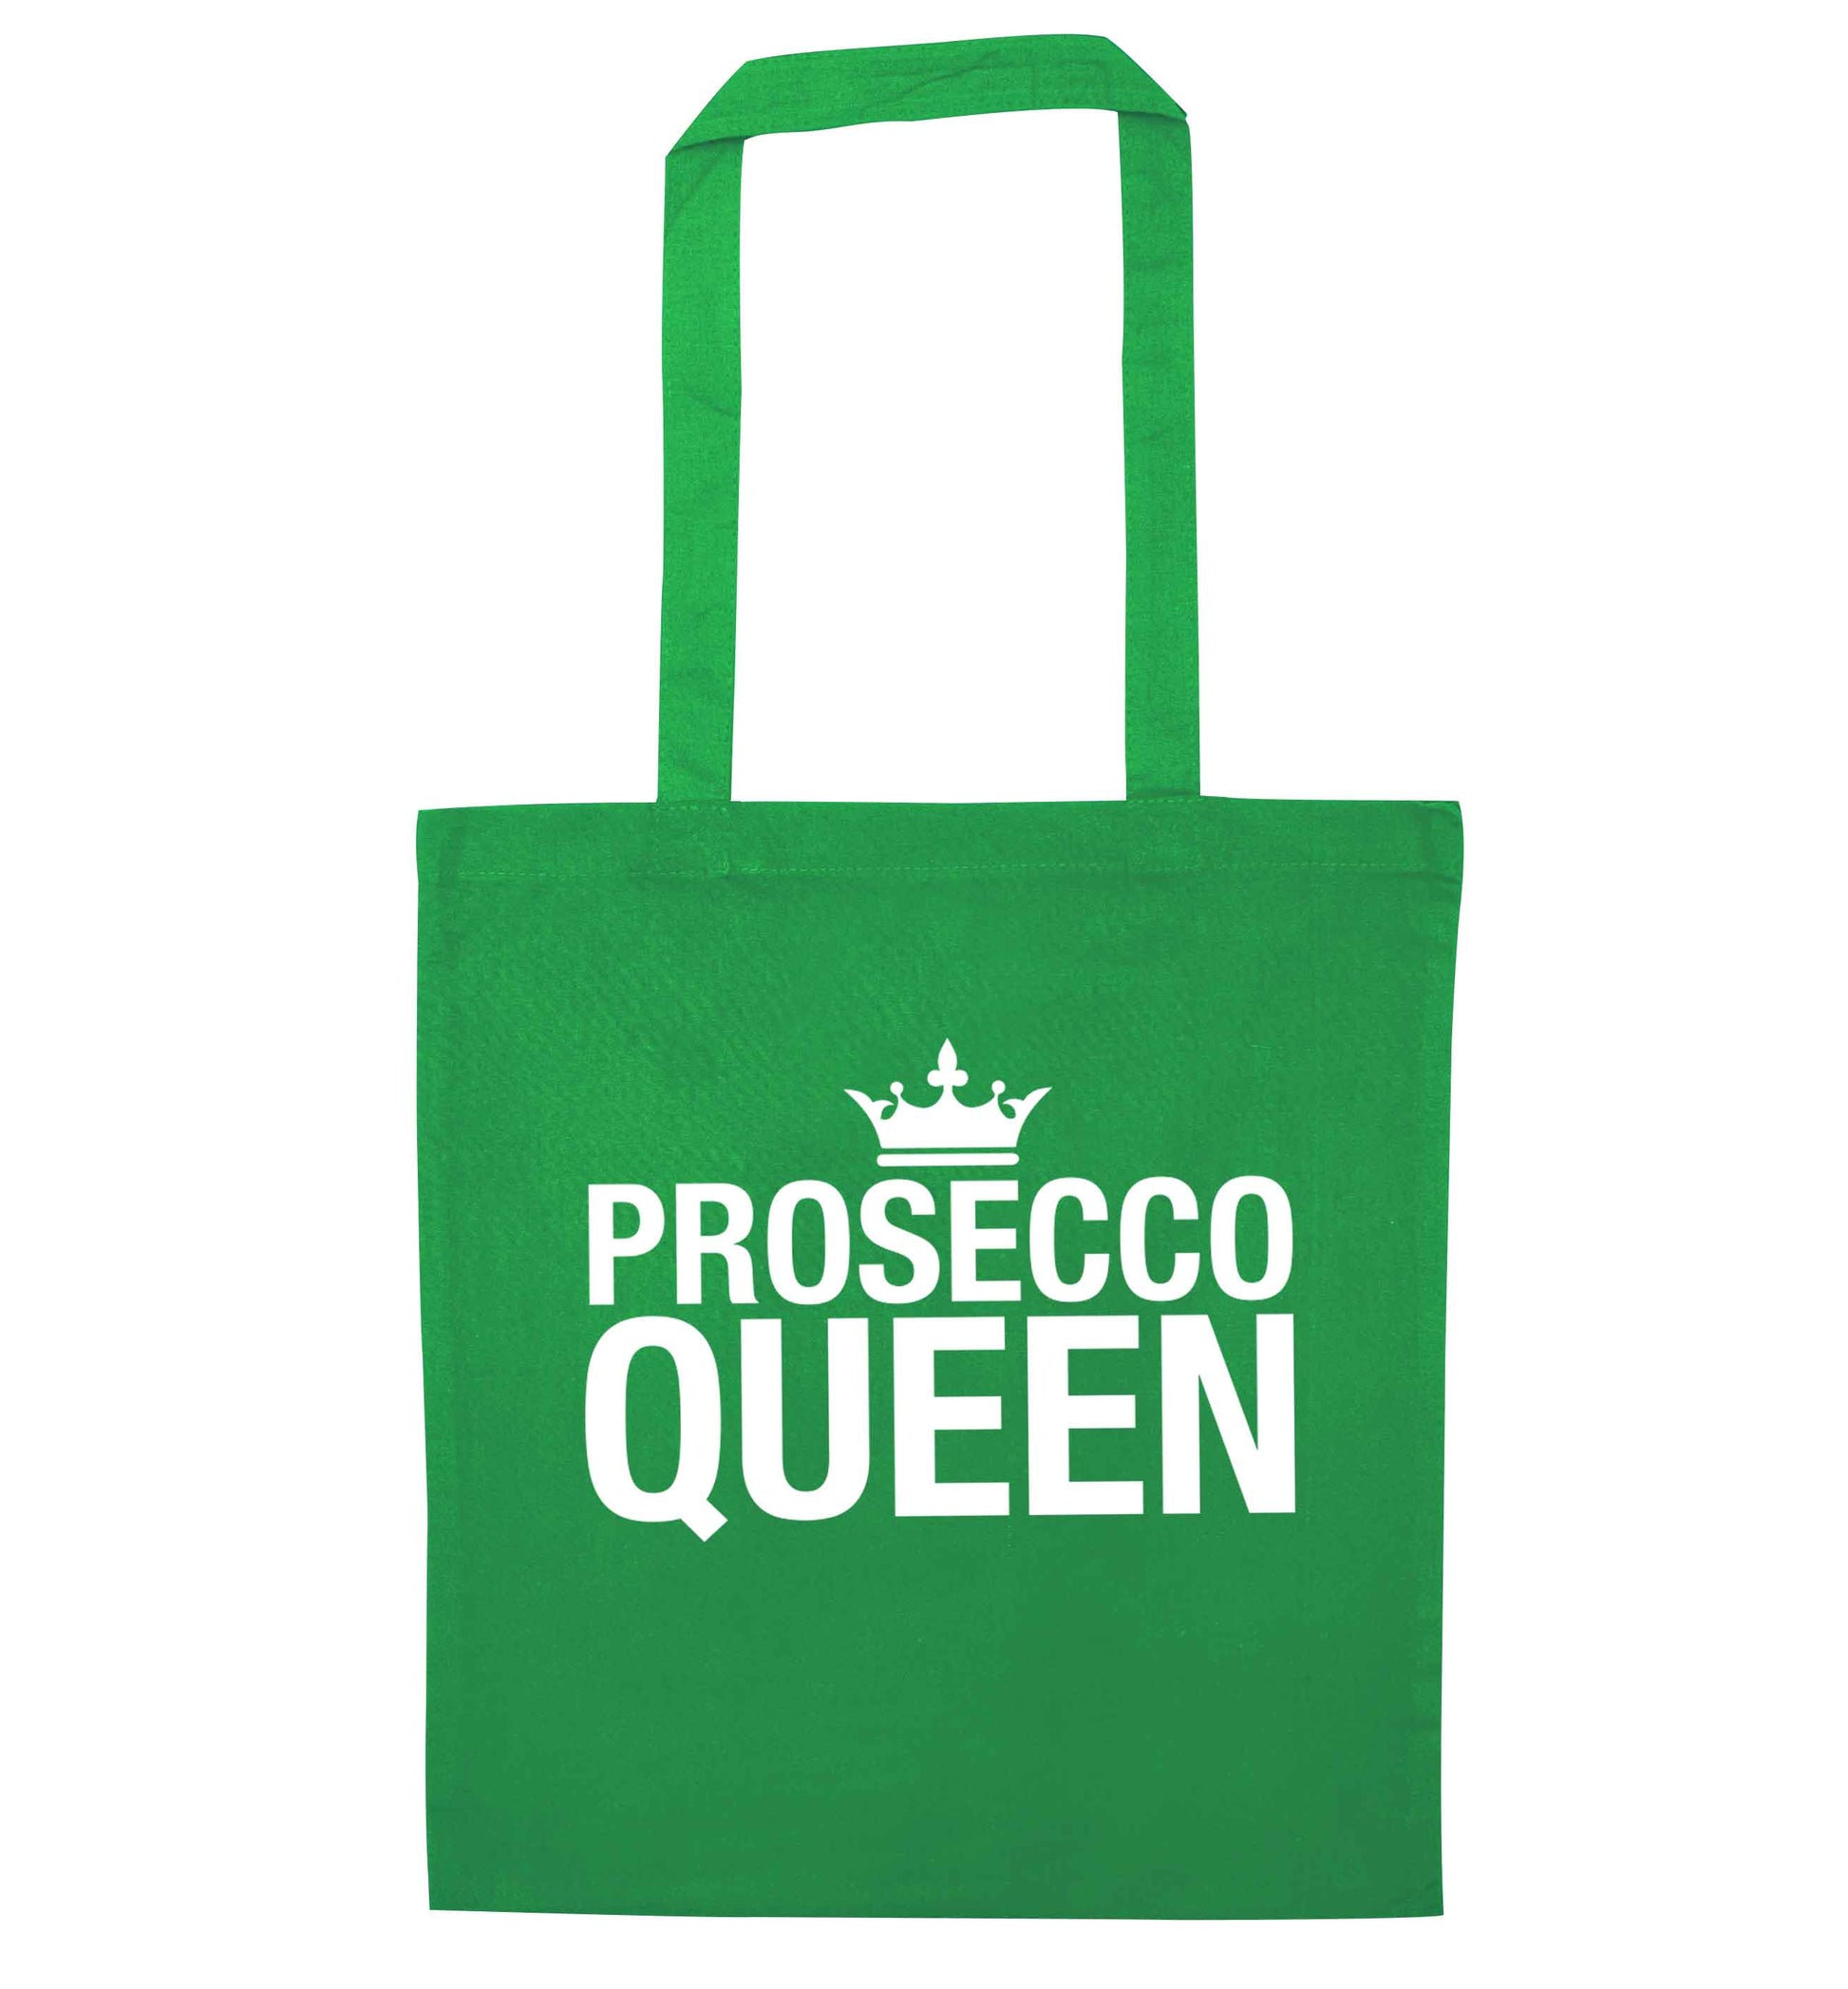 Prosecco queen green tote bag